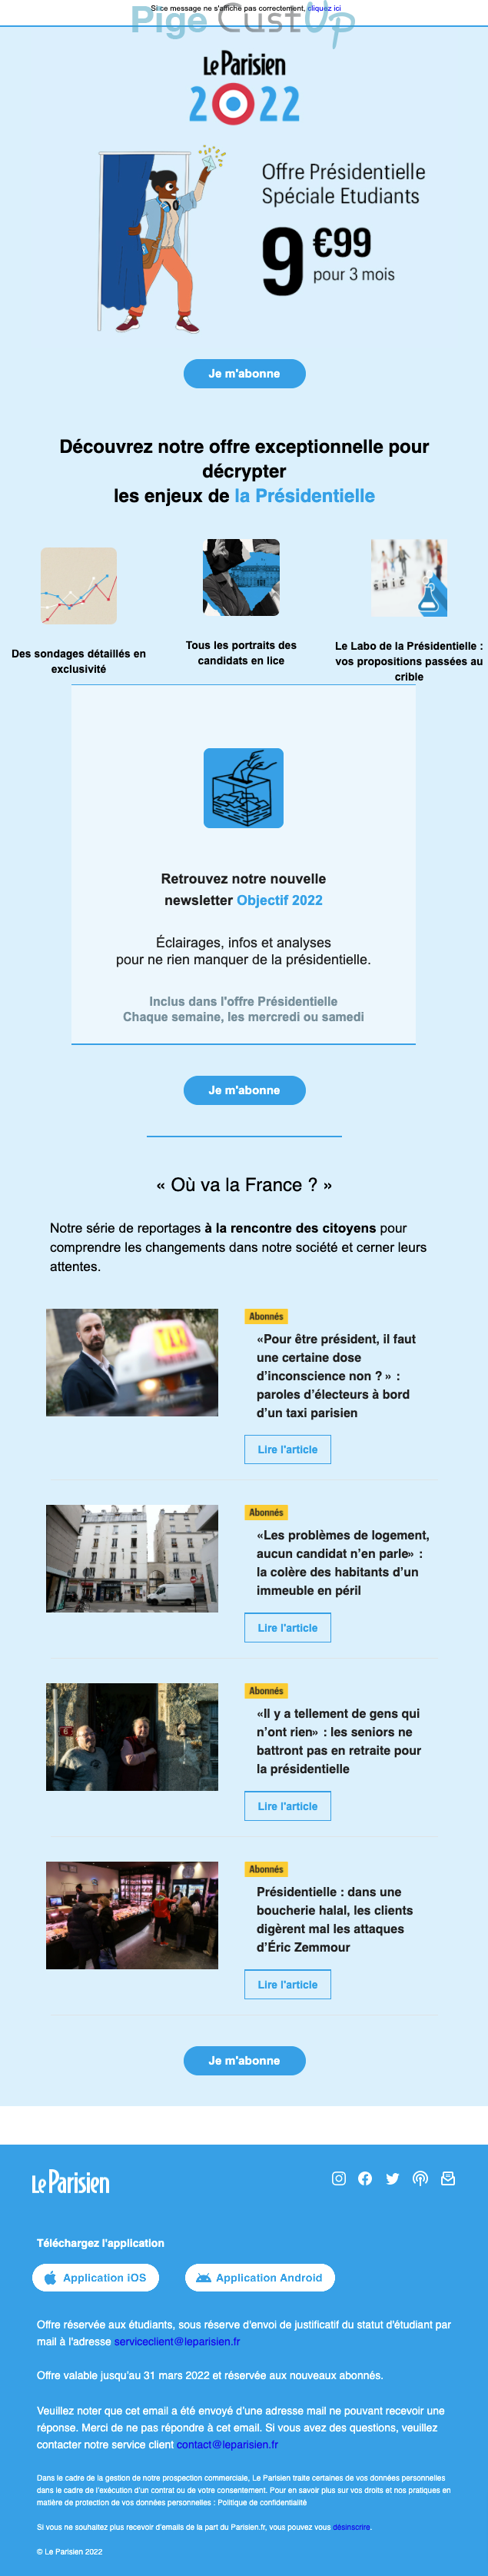 Exemple de Type de media  e-mailing - Le Parisien - Marketing Acquisition - Acquisition abonnements